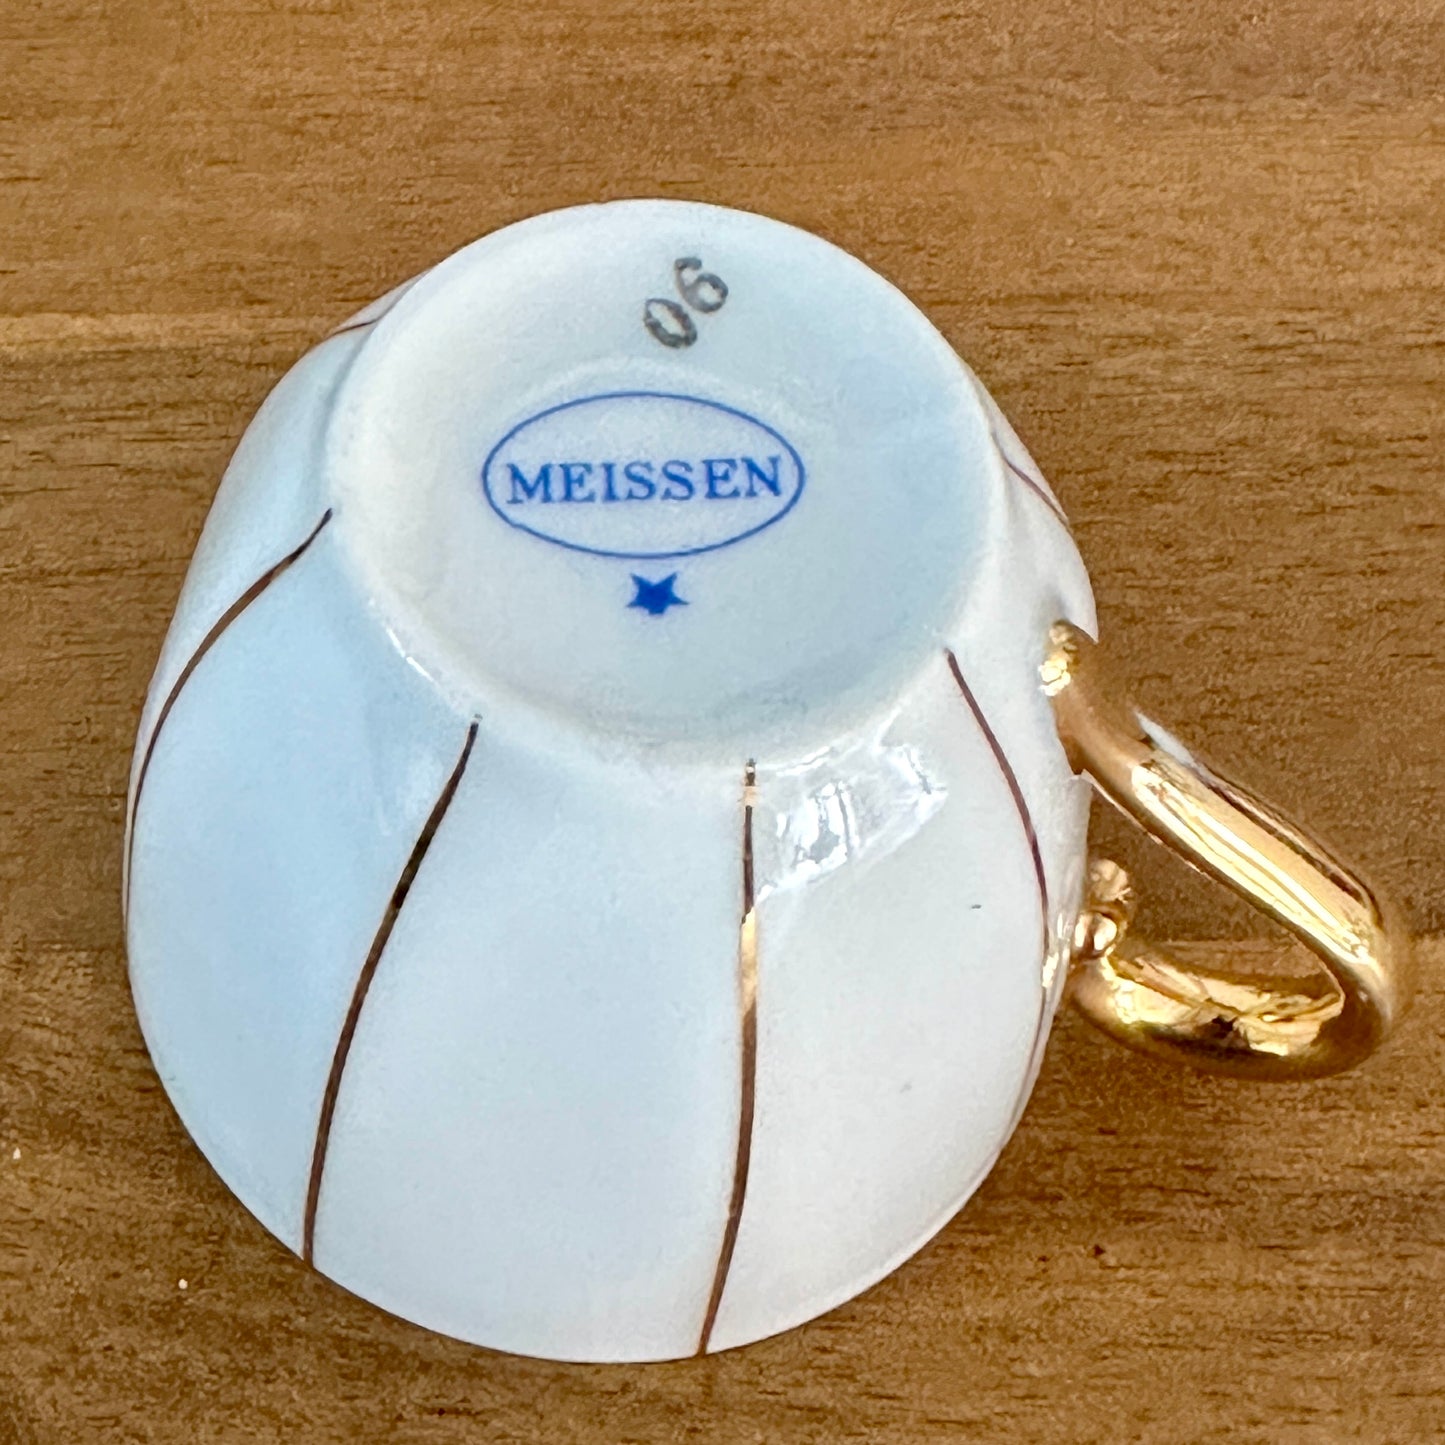 Service à café en porcelaine de Meissen - Art déco - Circa 1930 - Blanc et or - 32 pièces